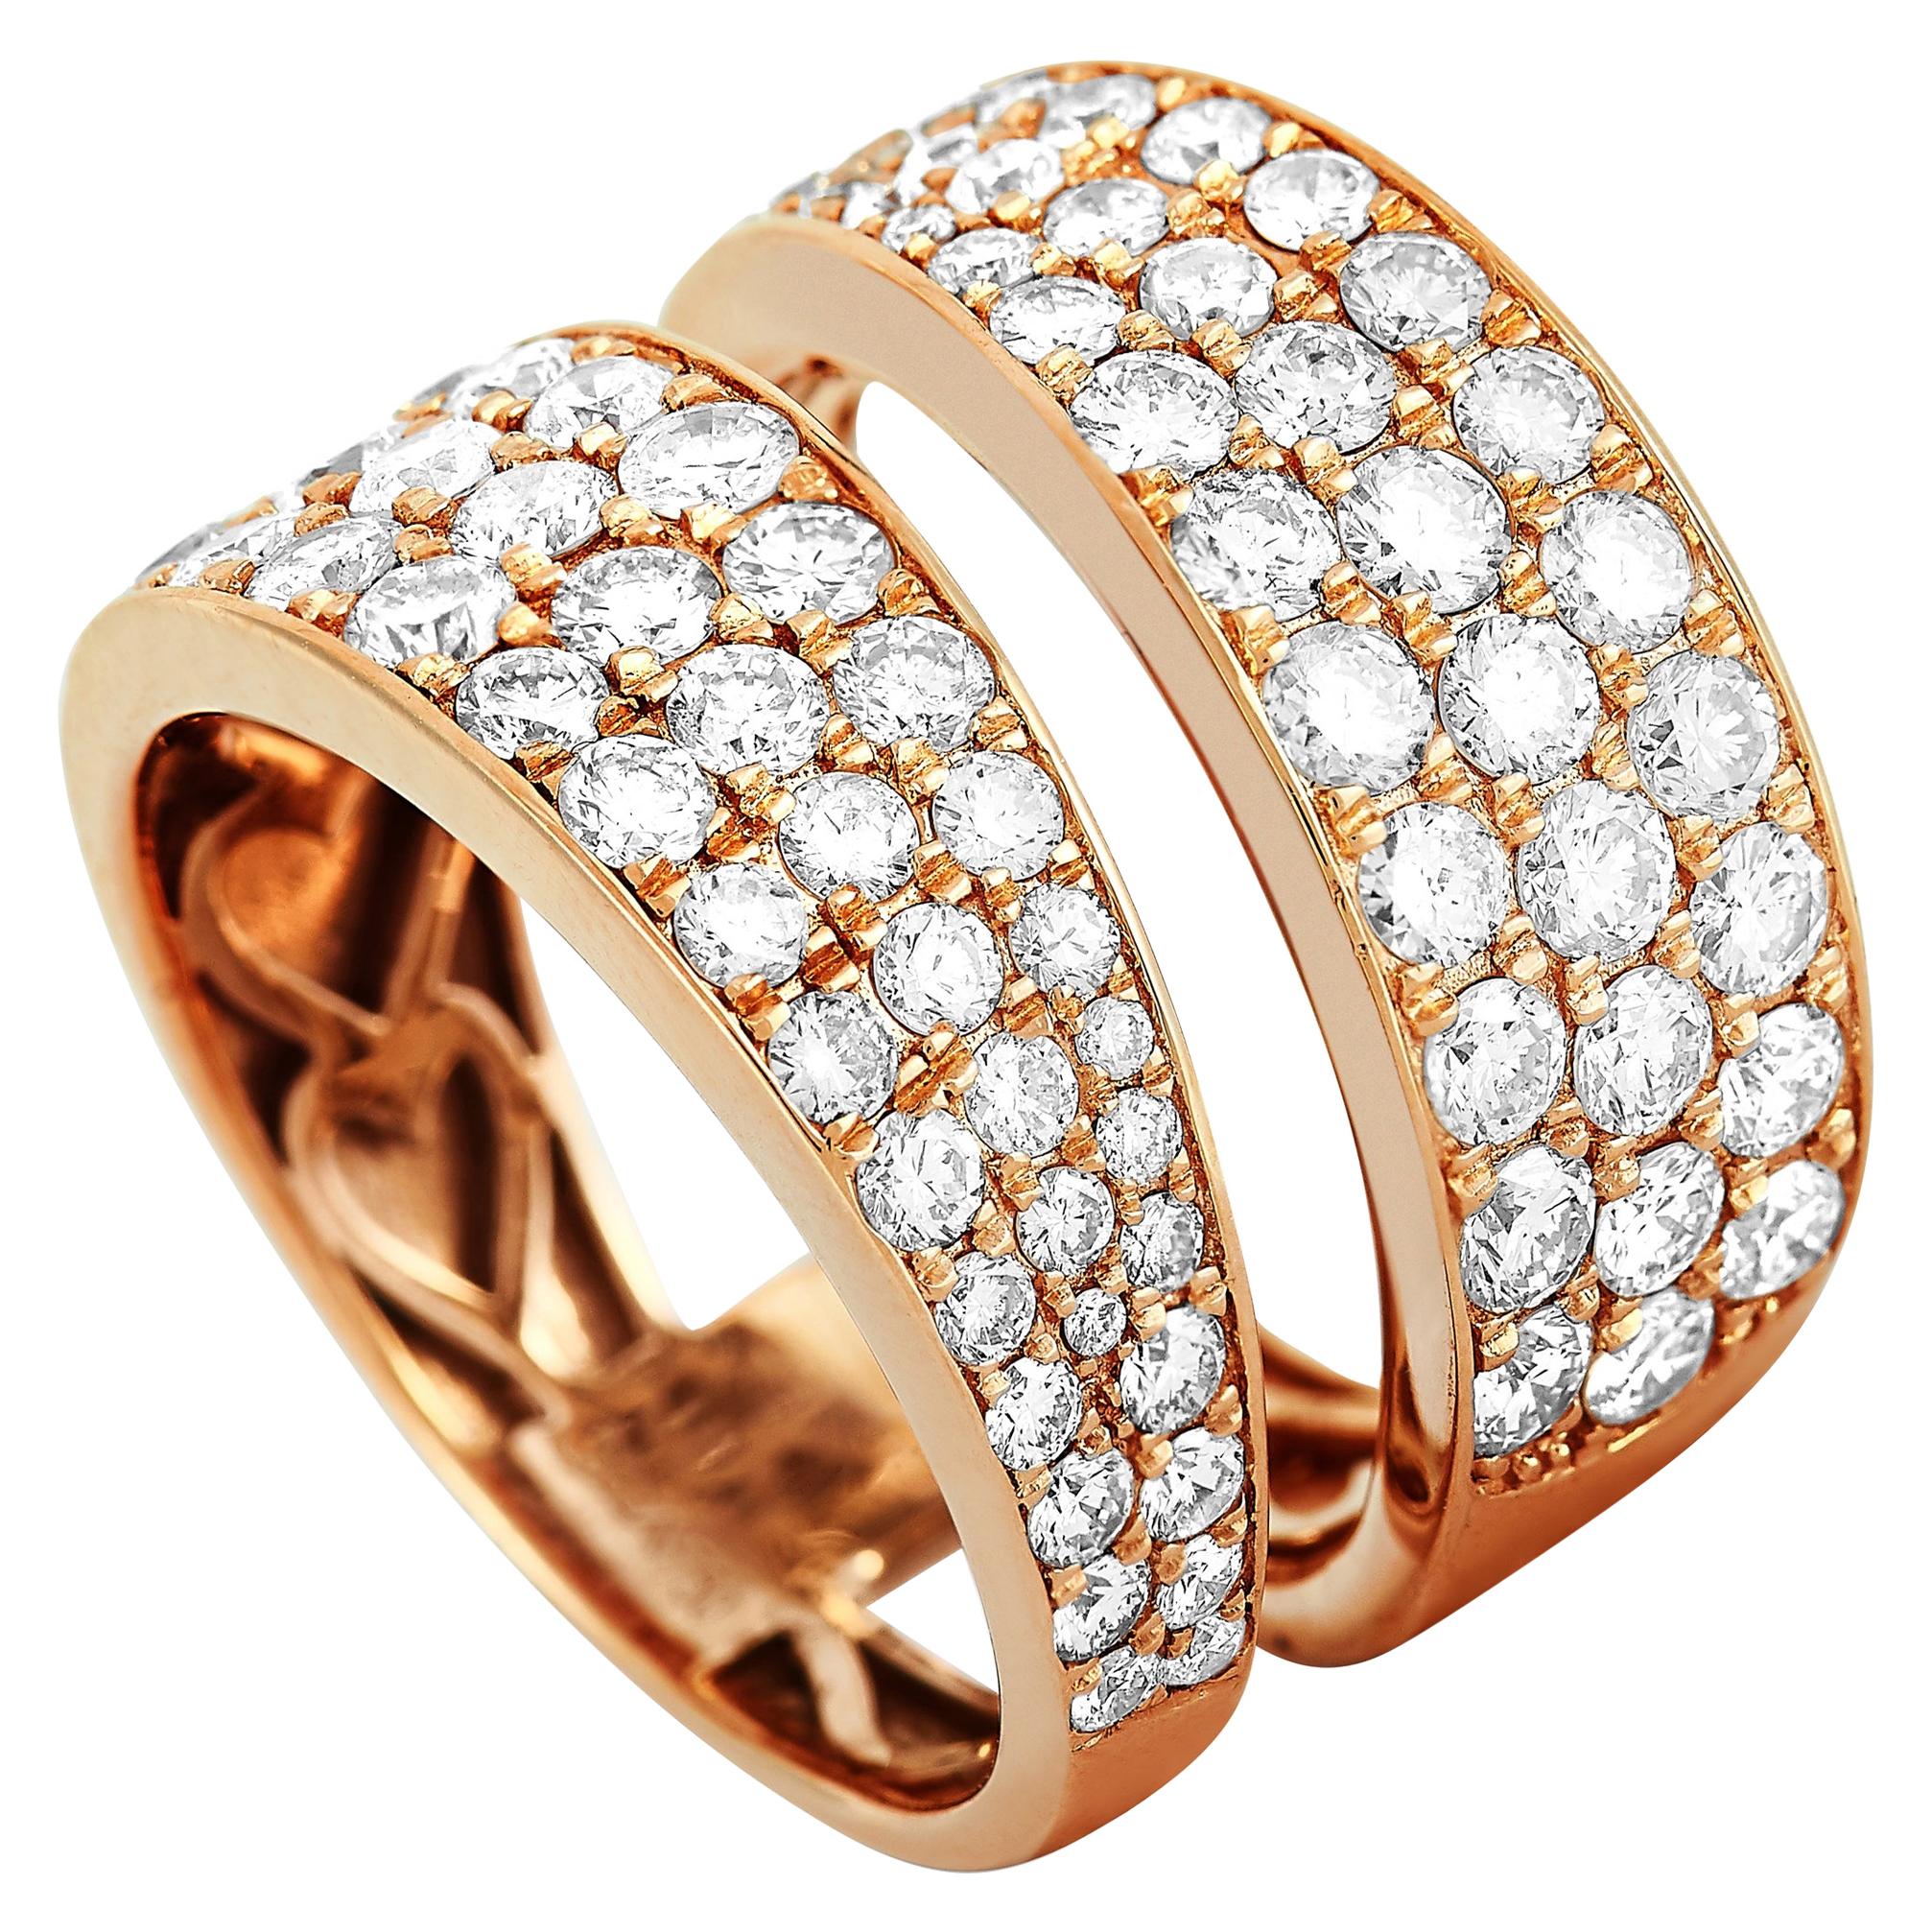 LB Exclusive 18 Karat Rose Gold 2.50 Carat Diamond Ring